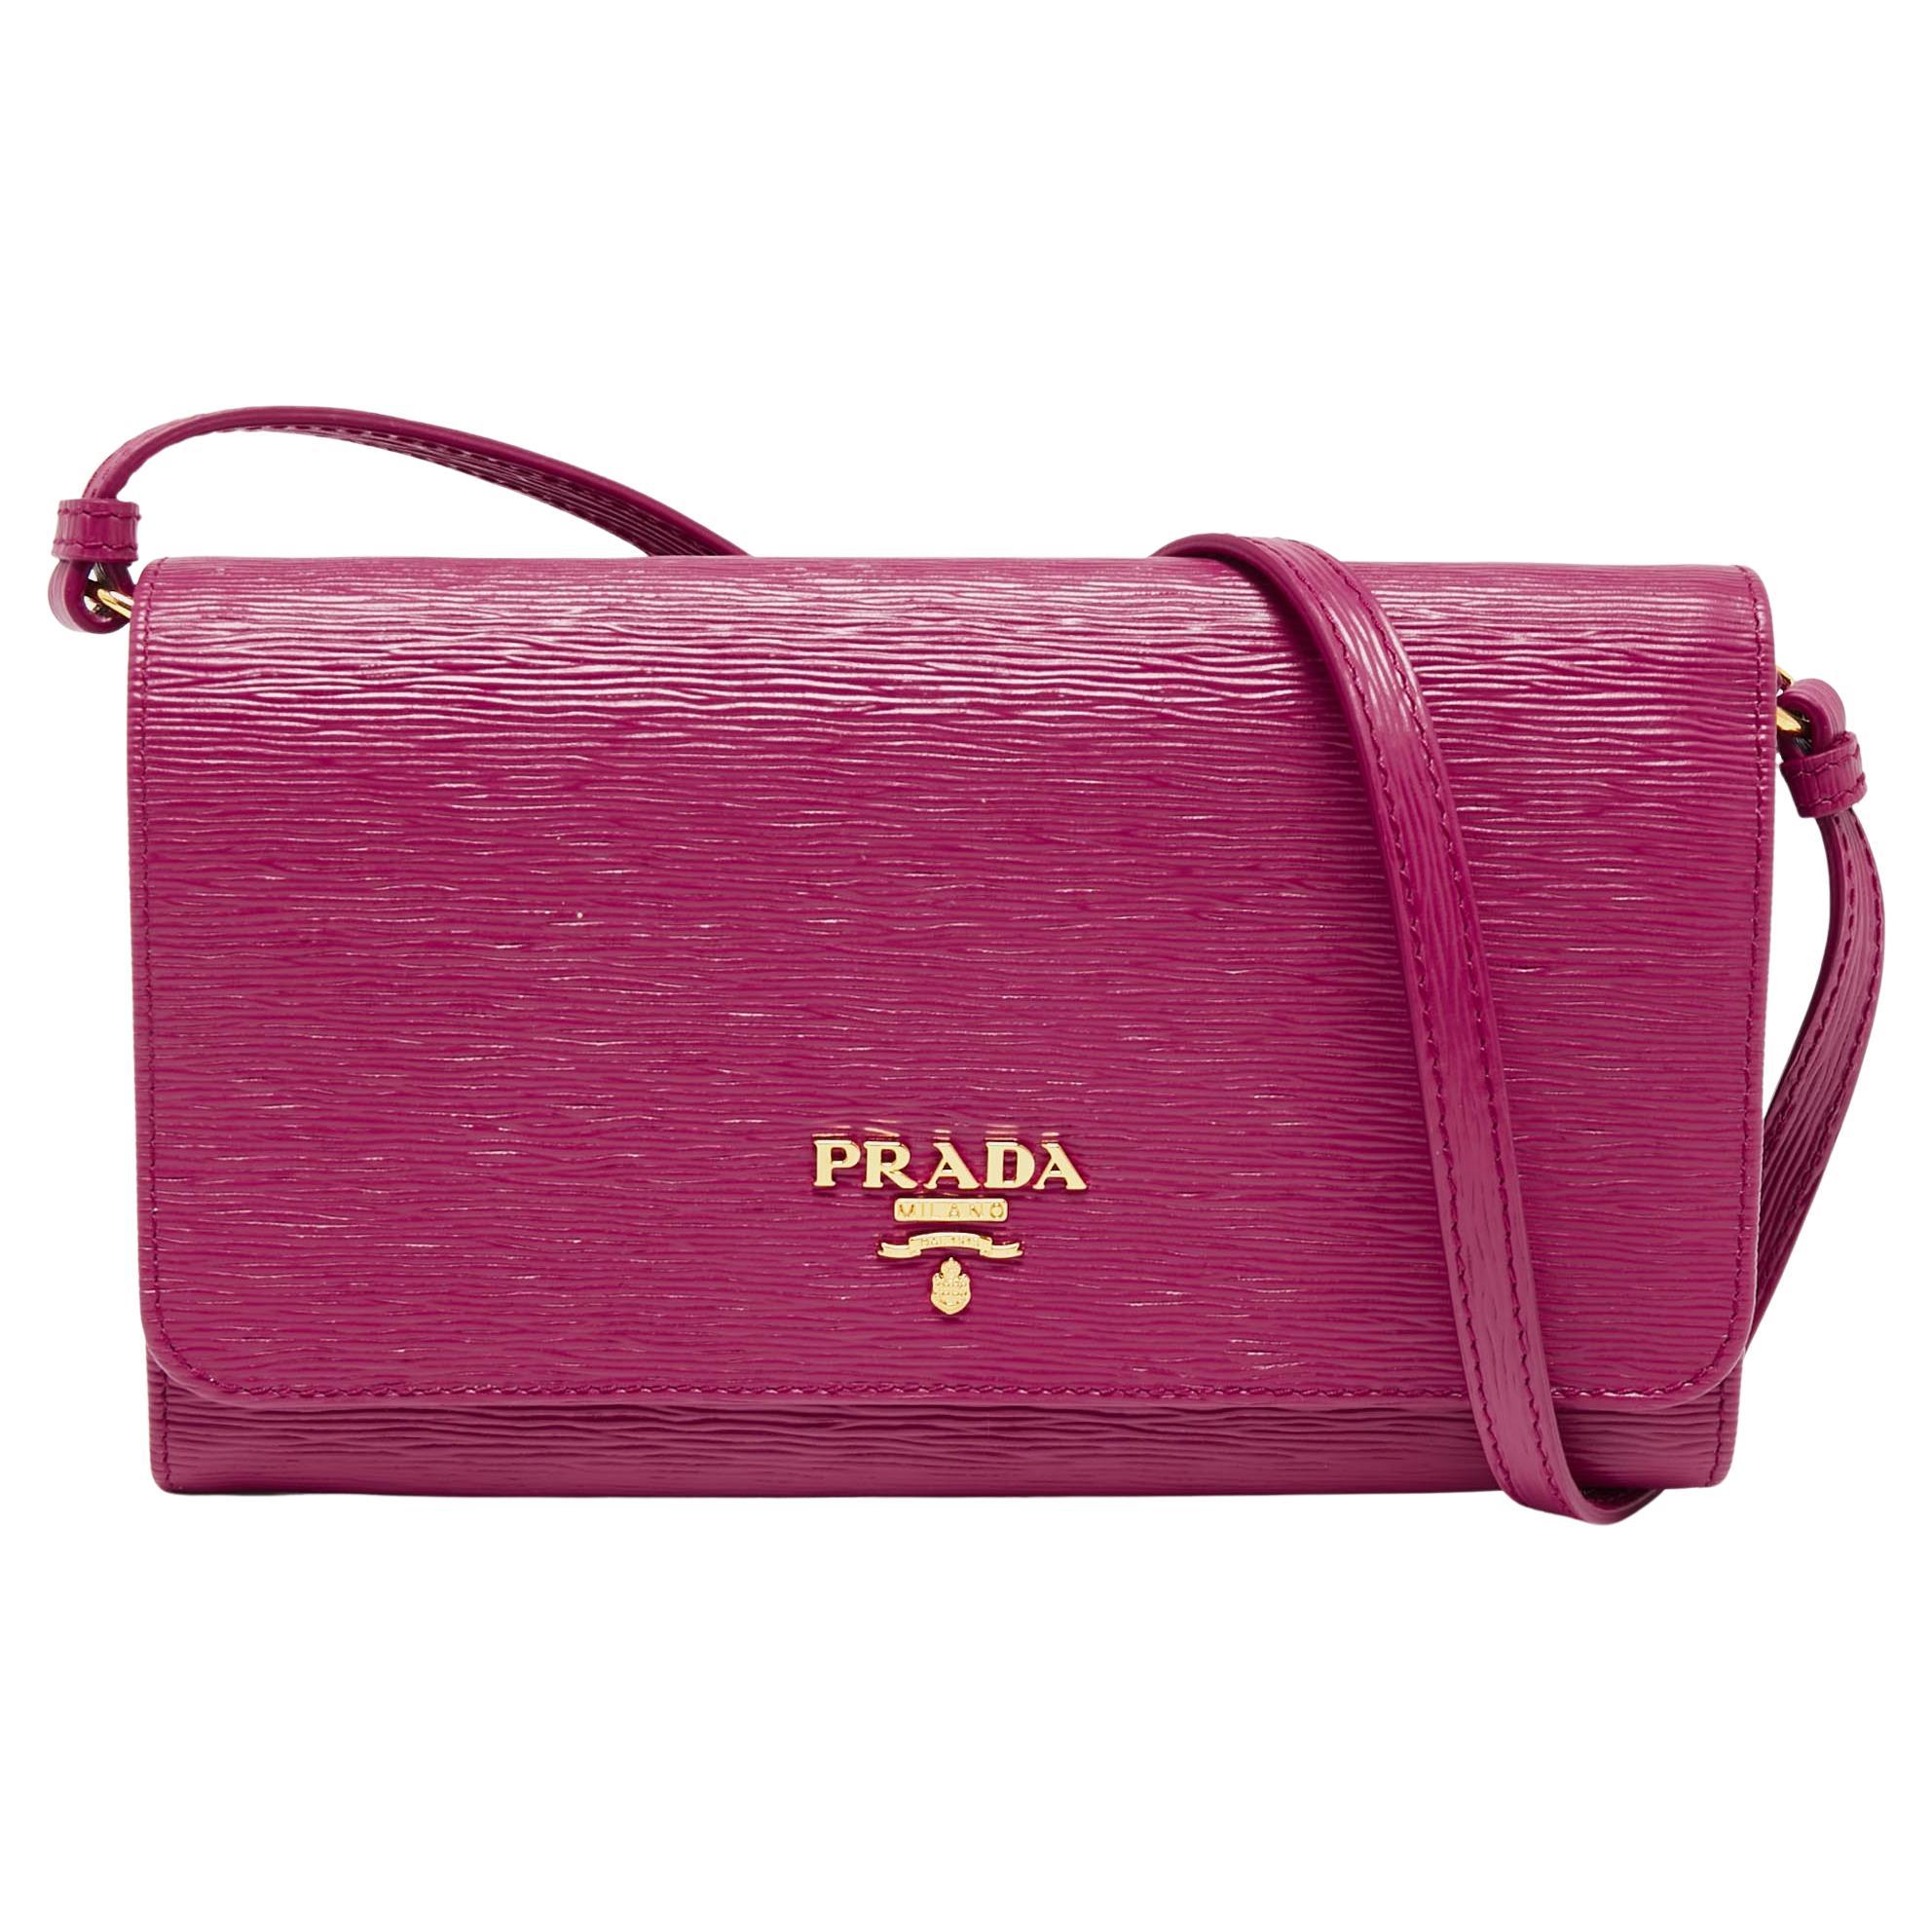 Prada Pink Vitello Move Leather Wallet On Strap